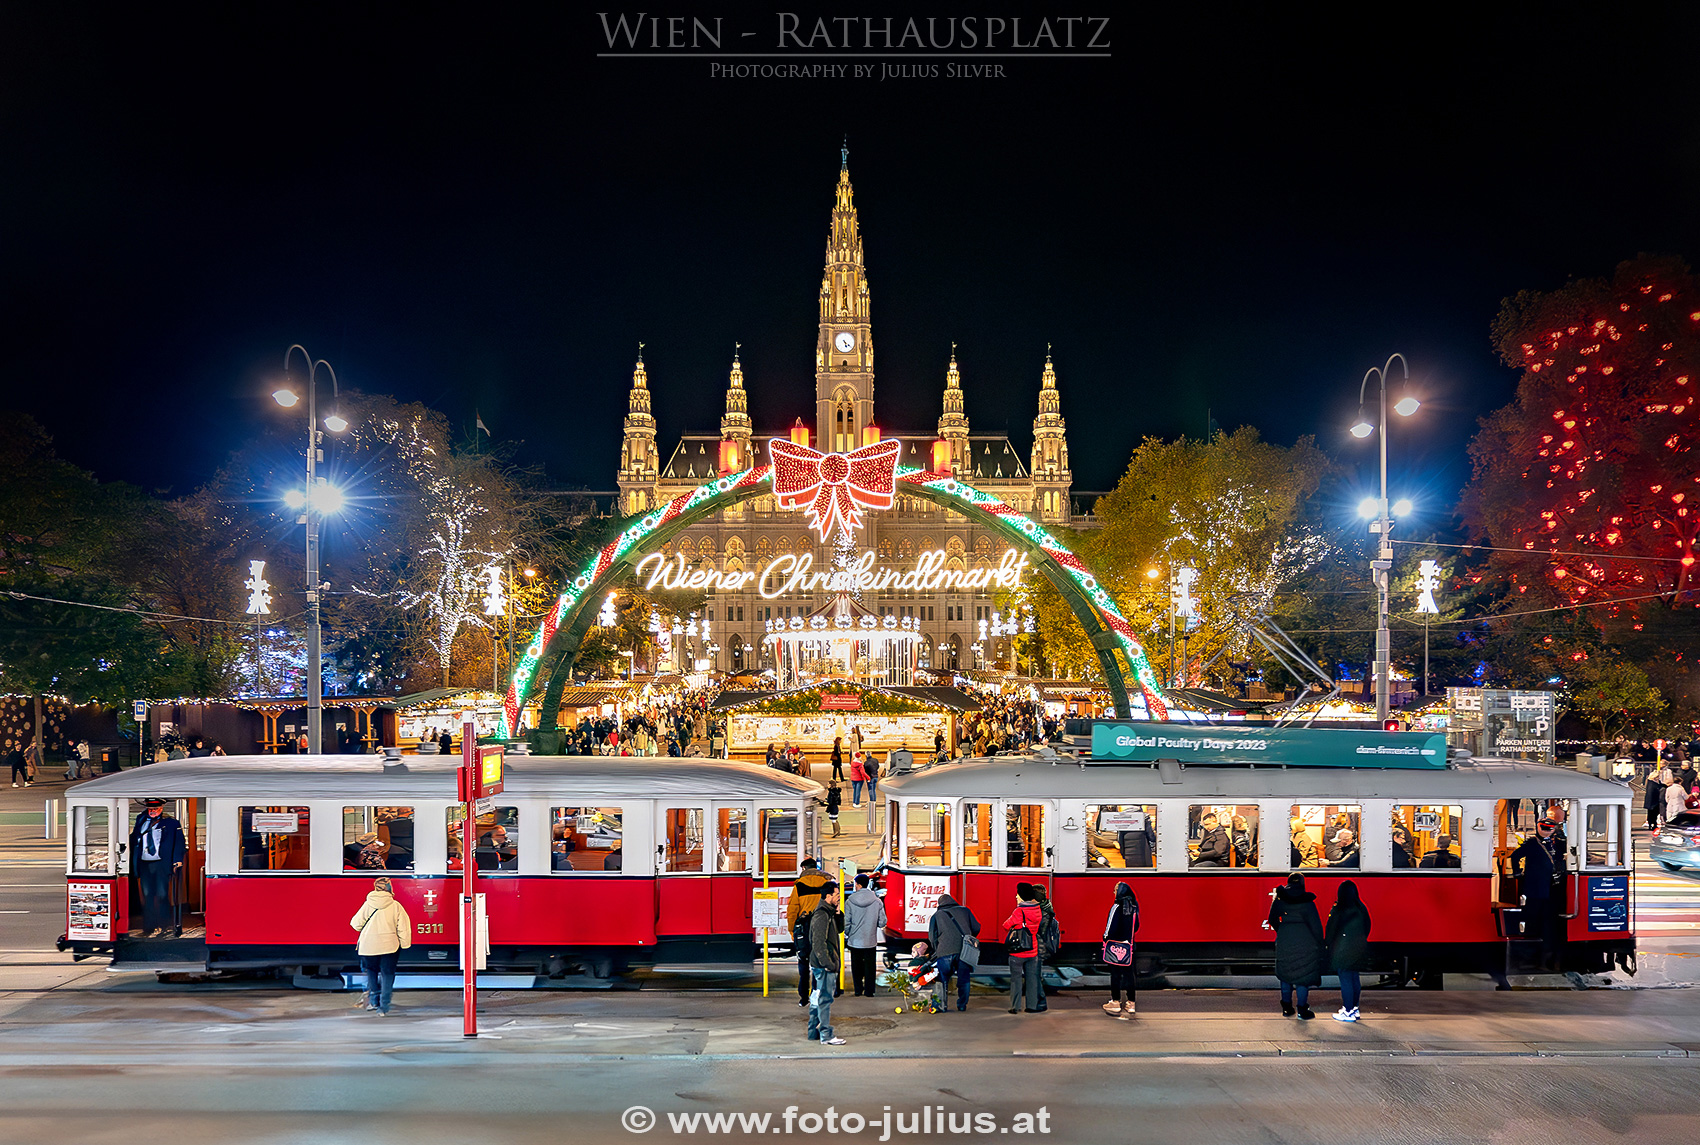 W_7644a_Rathausplatz_Wien.jpg, 1000kB